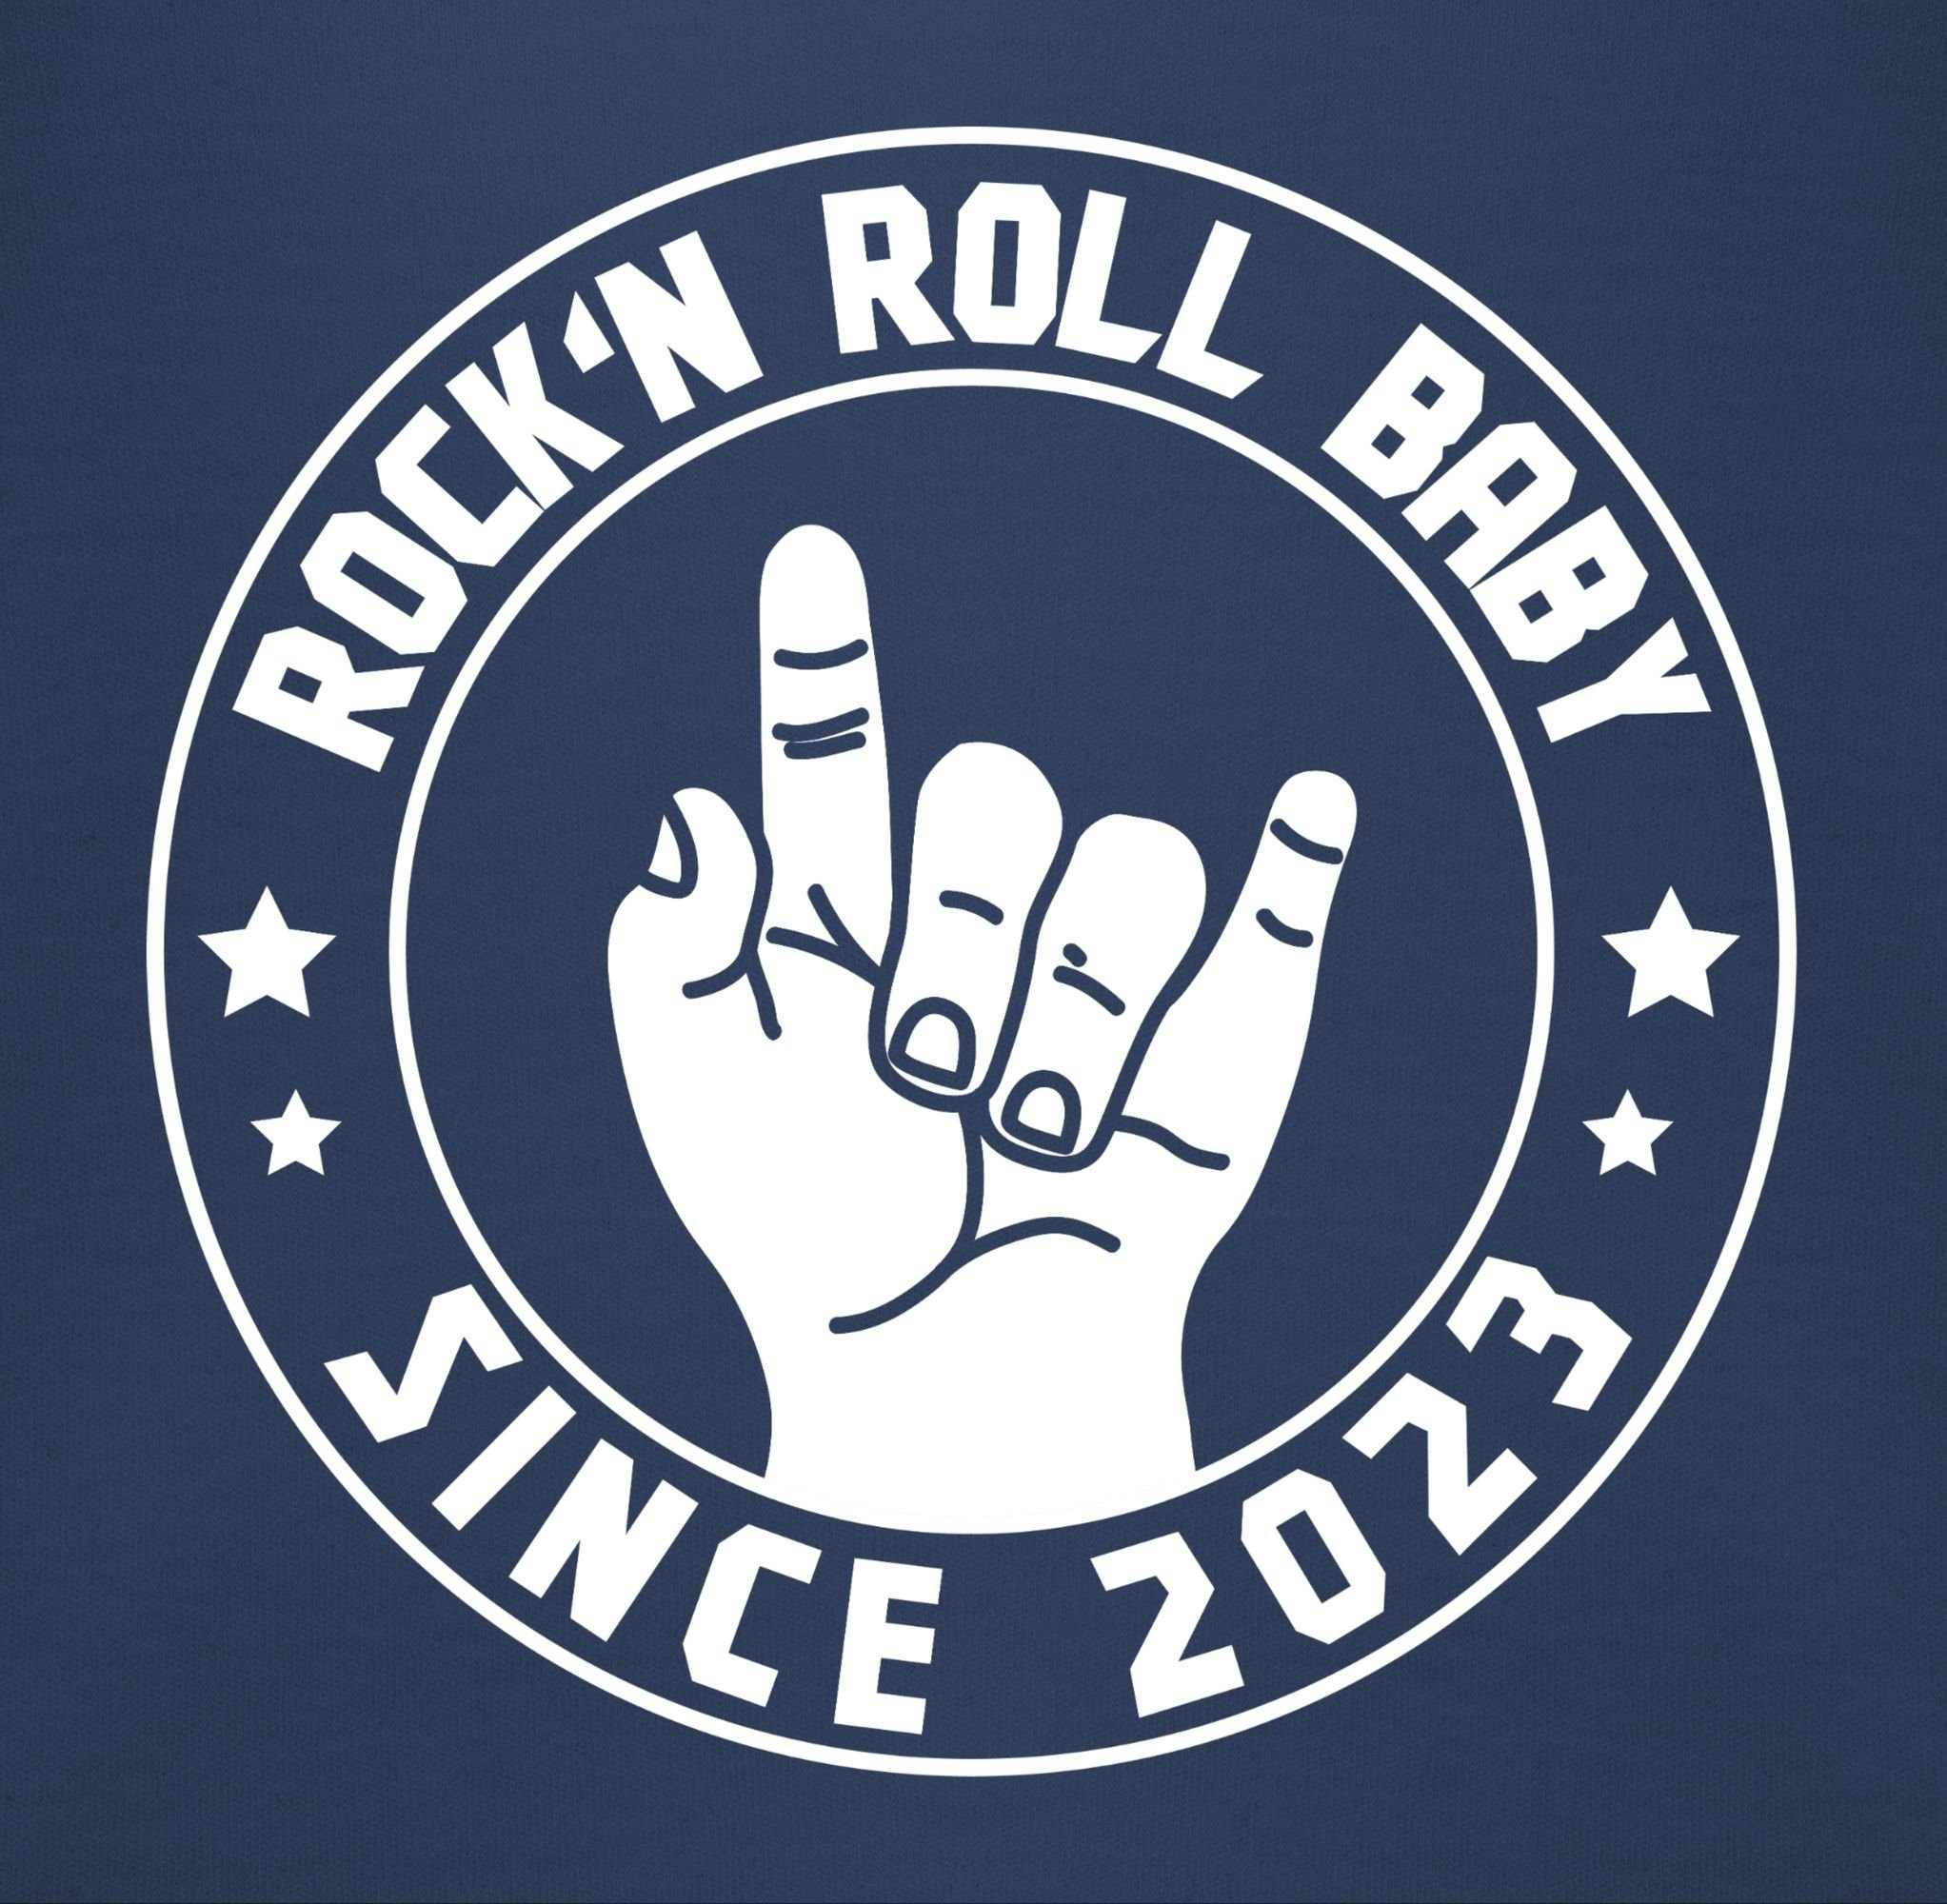 Shirtracer Navy Roll Lätzchen Sprüche Rock'n Baby Blau since Baby 2023, 3